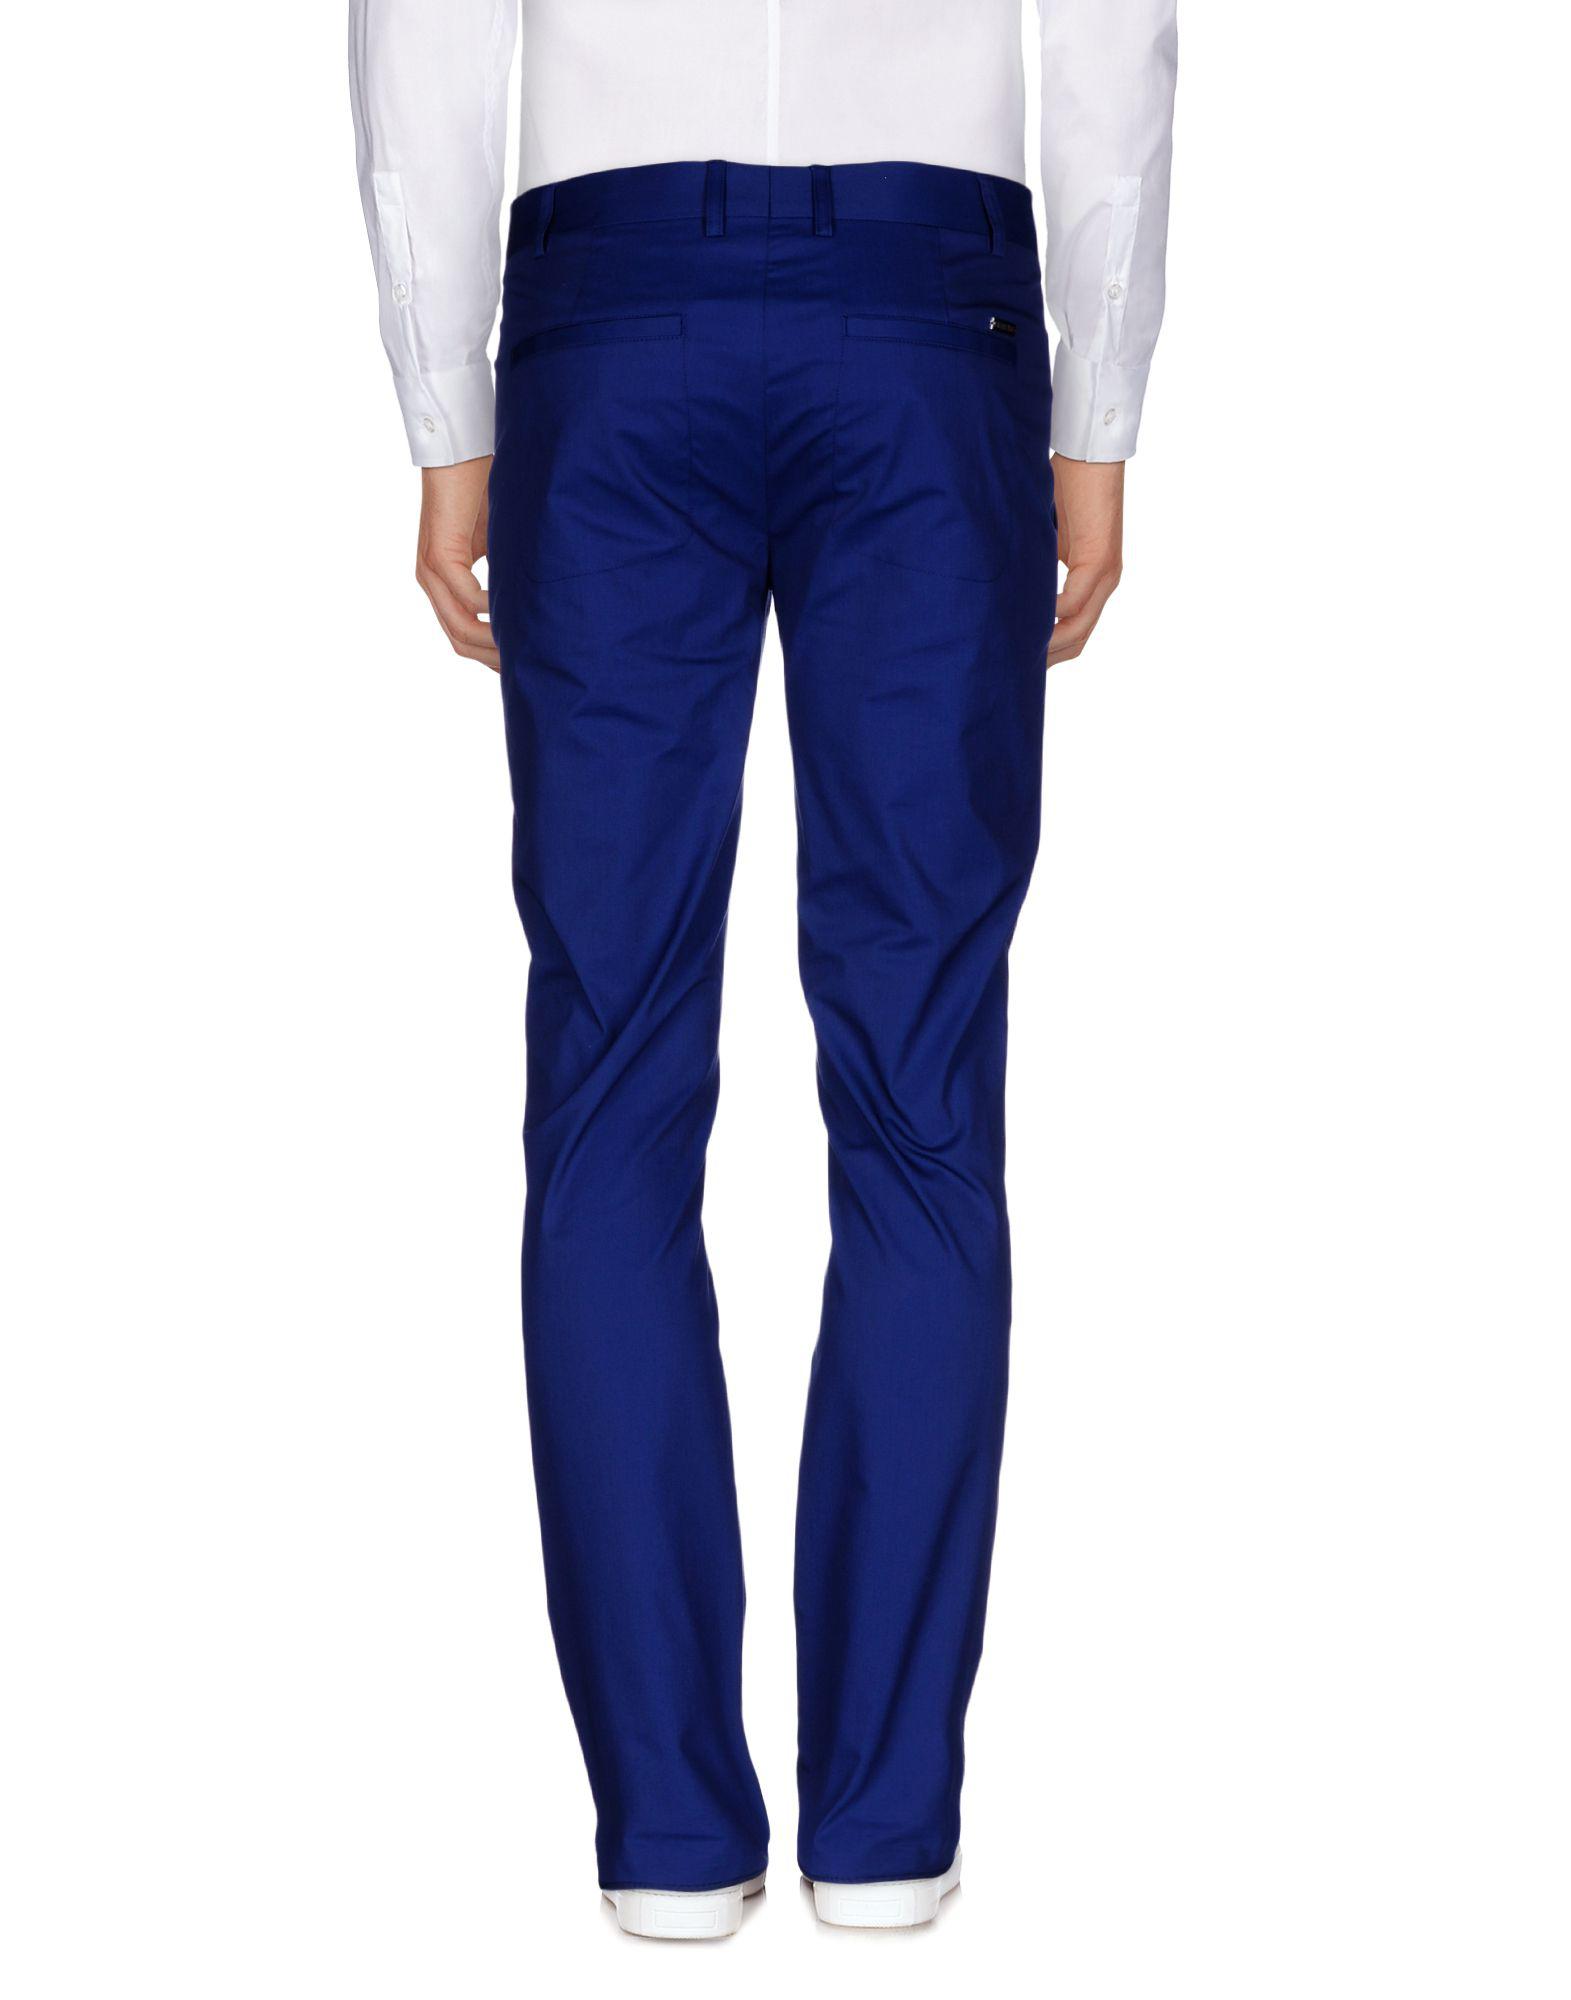 Lyst - Bikkembergs Casual Trouser in Blue for Men